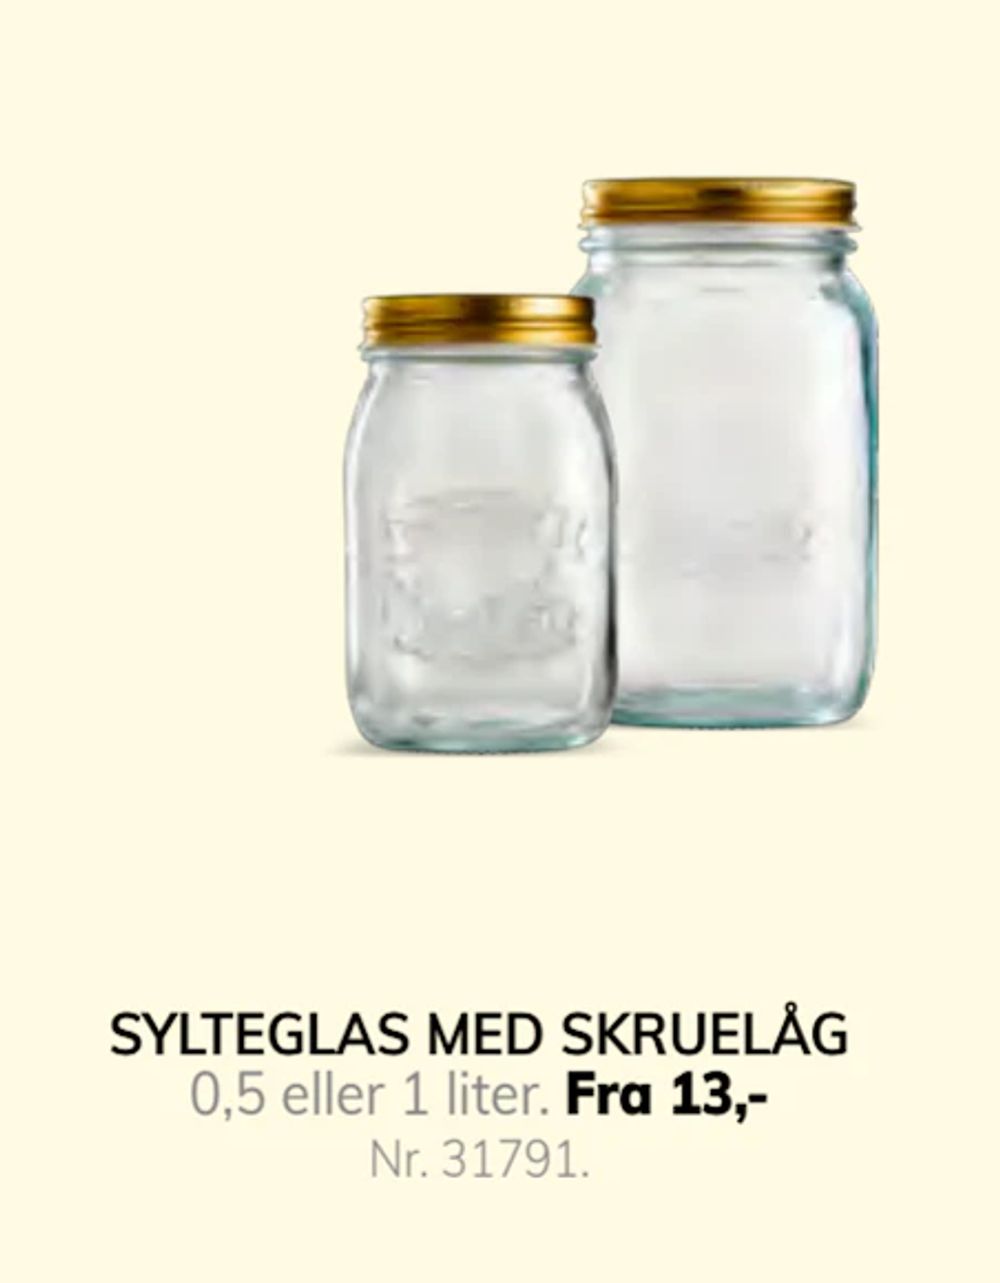 Tilbud på SYLTEGLAS MED SKRUELÅG fra Daells Bolighus til 13 kr.